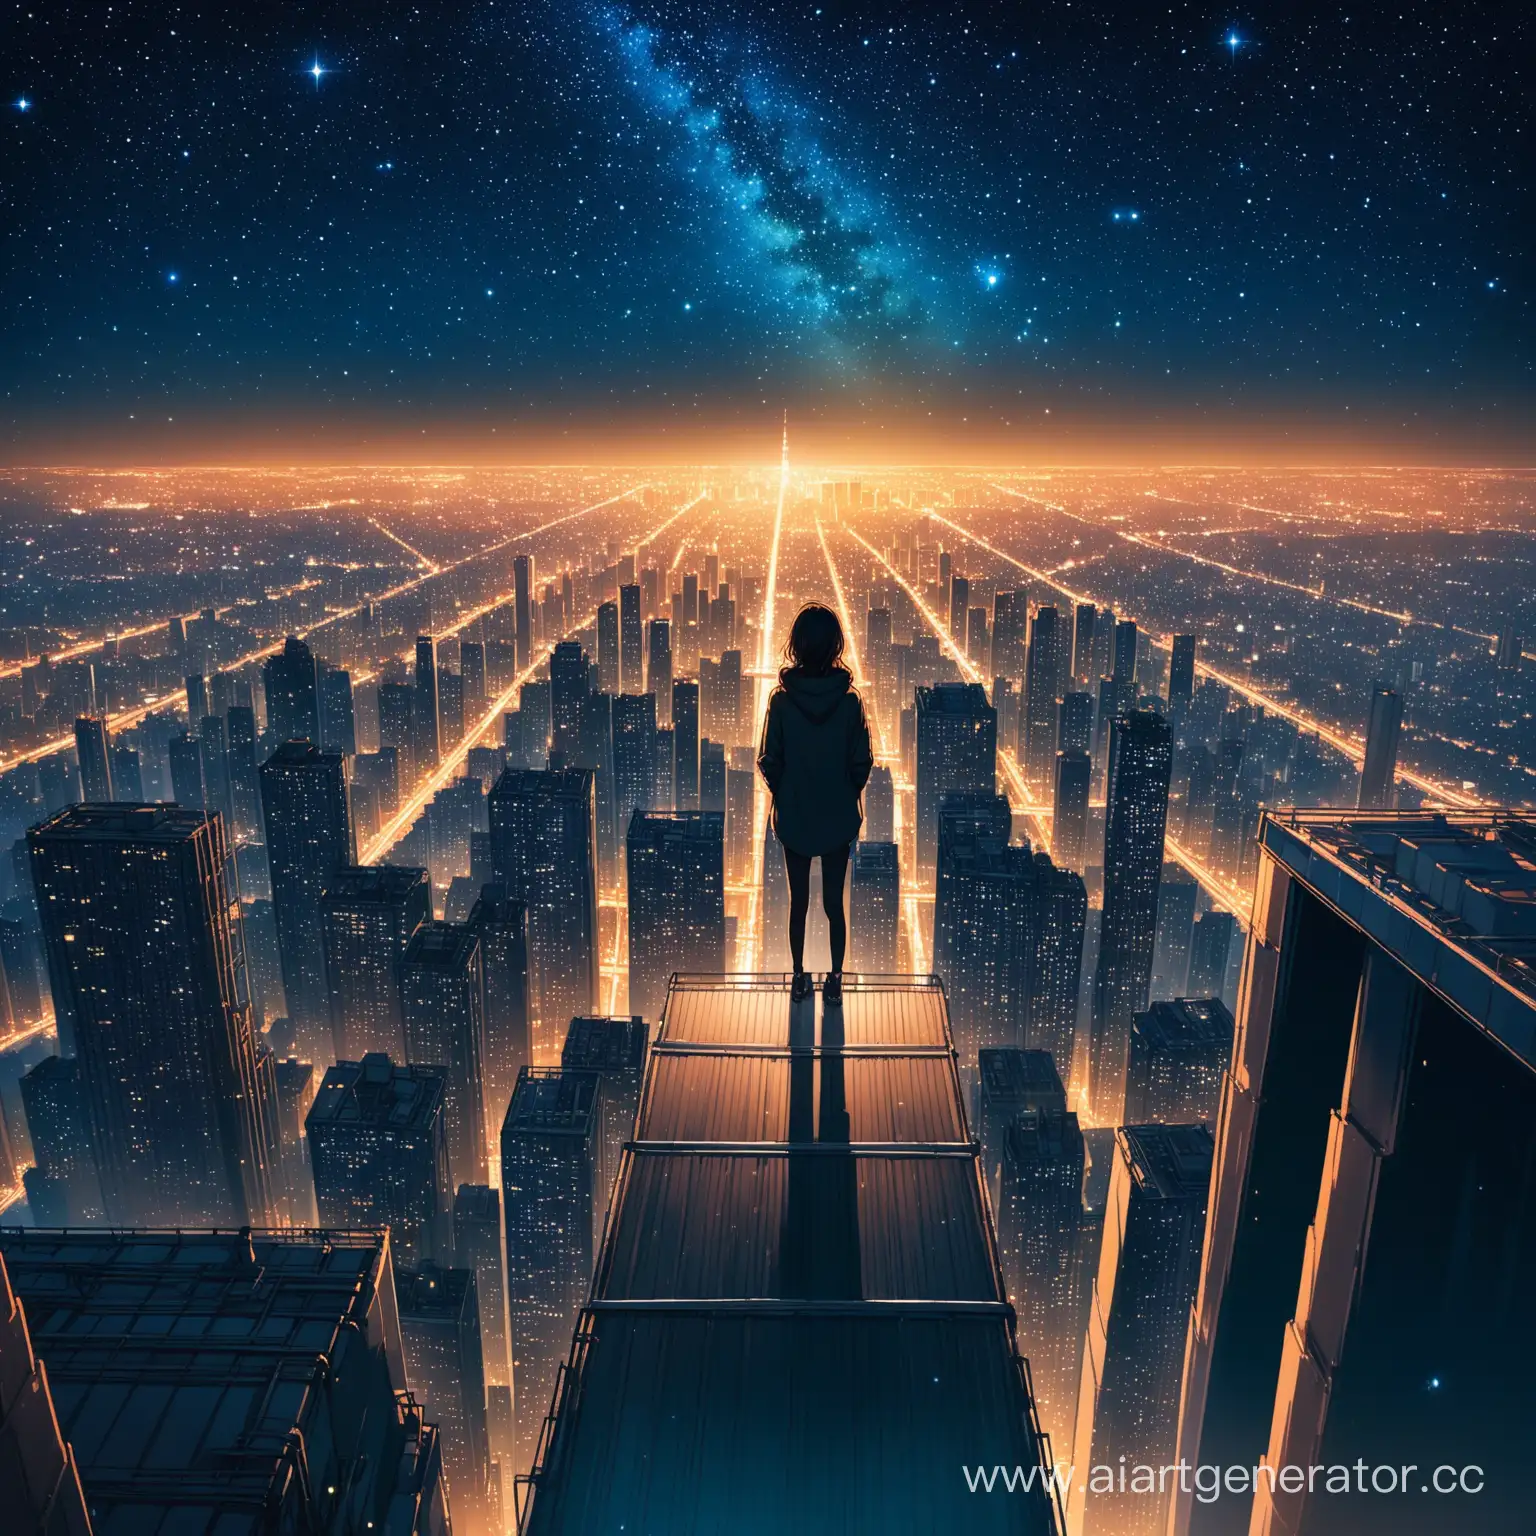 Человек, стоящий на крыше высокого здания и смотрит на звёздное небо, а вокруг огни ночного города